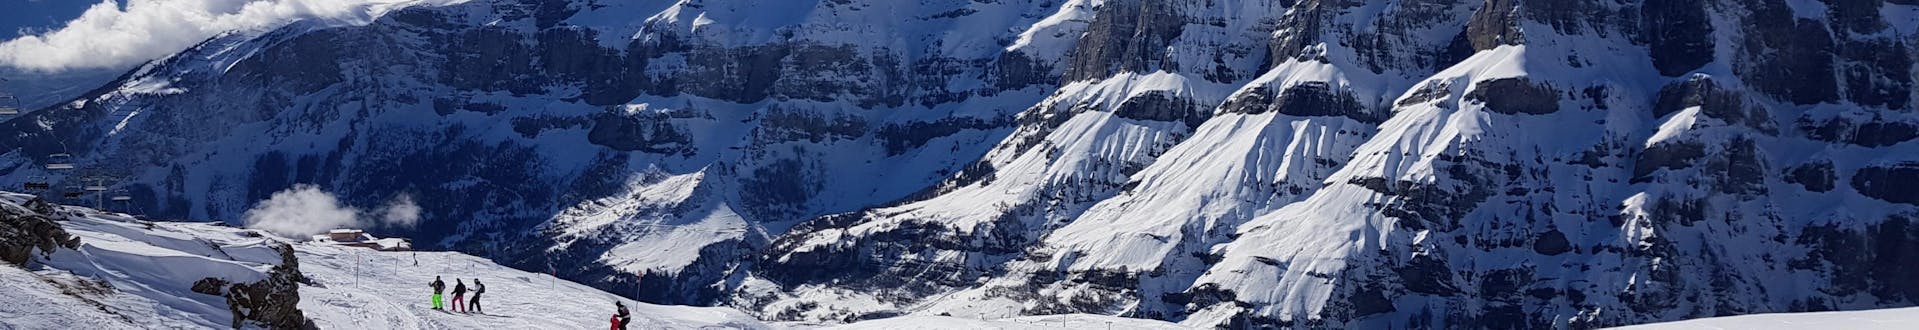 Vue de la station de ski suisse de Leukerbad-Torrent, où les écoles de ski locales proposent leurs cours de ski.